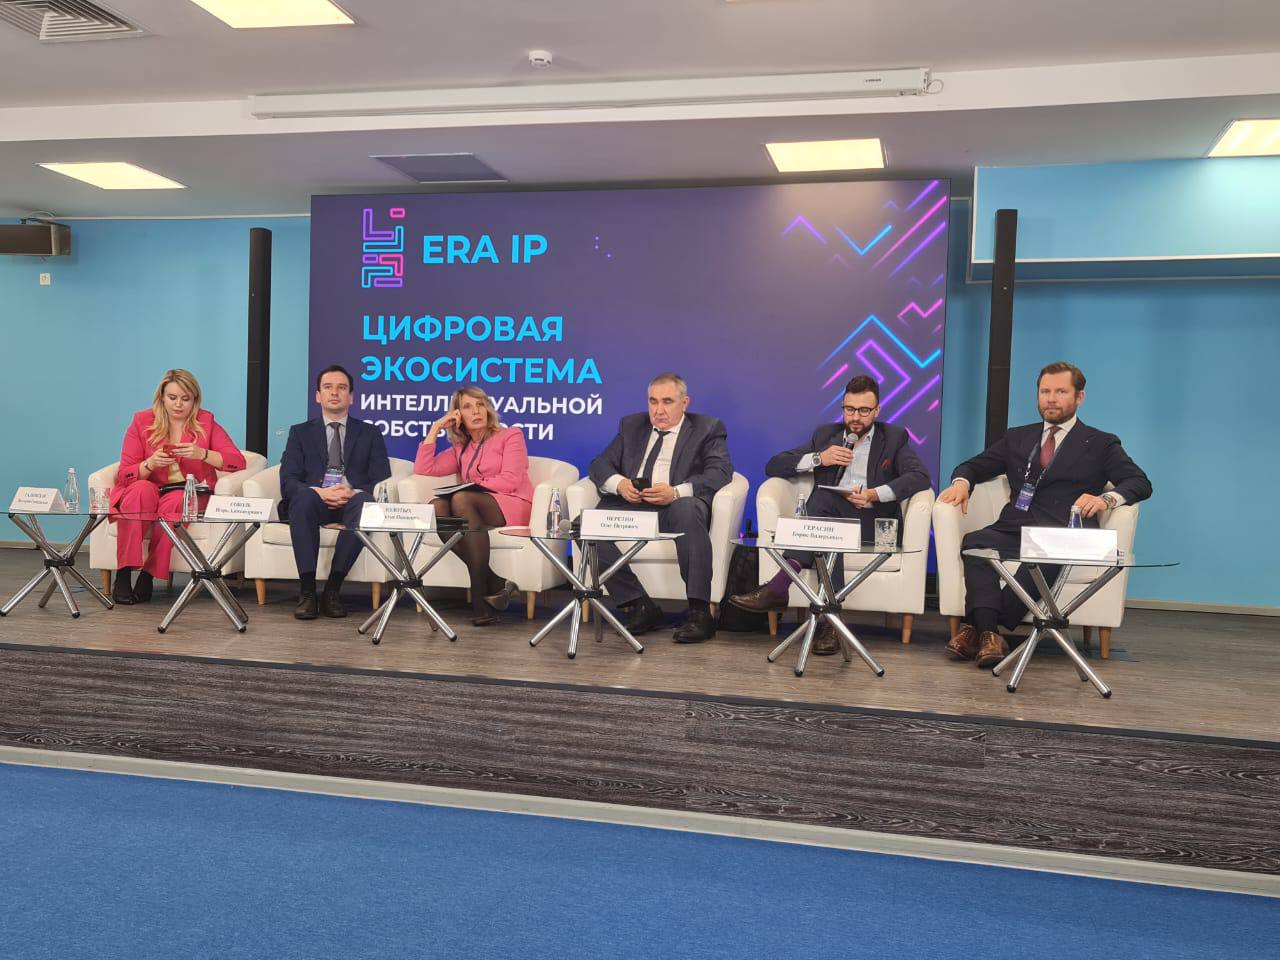 Дмитрий Марканов выступил на Конференции по цифровой трансформации: «ERA IP: Цифровая экосистема интеллектуальной собственности»